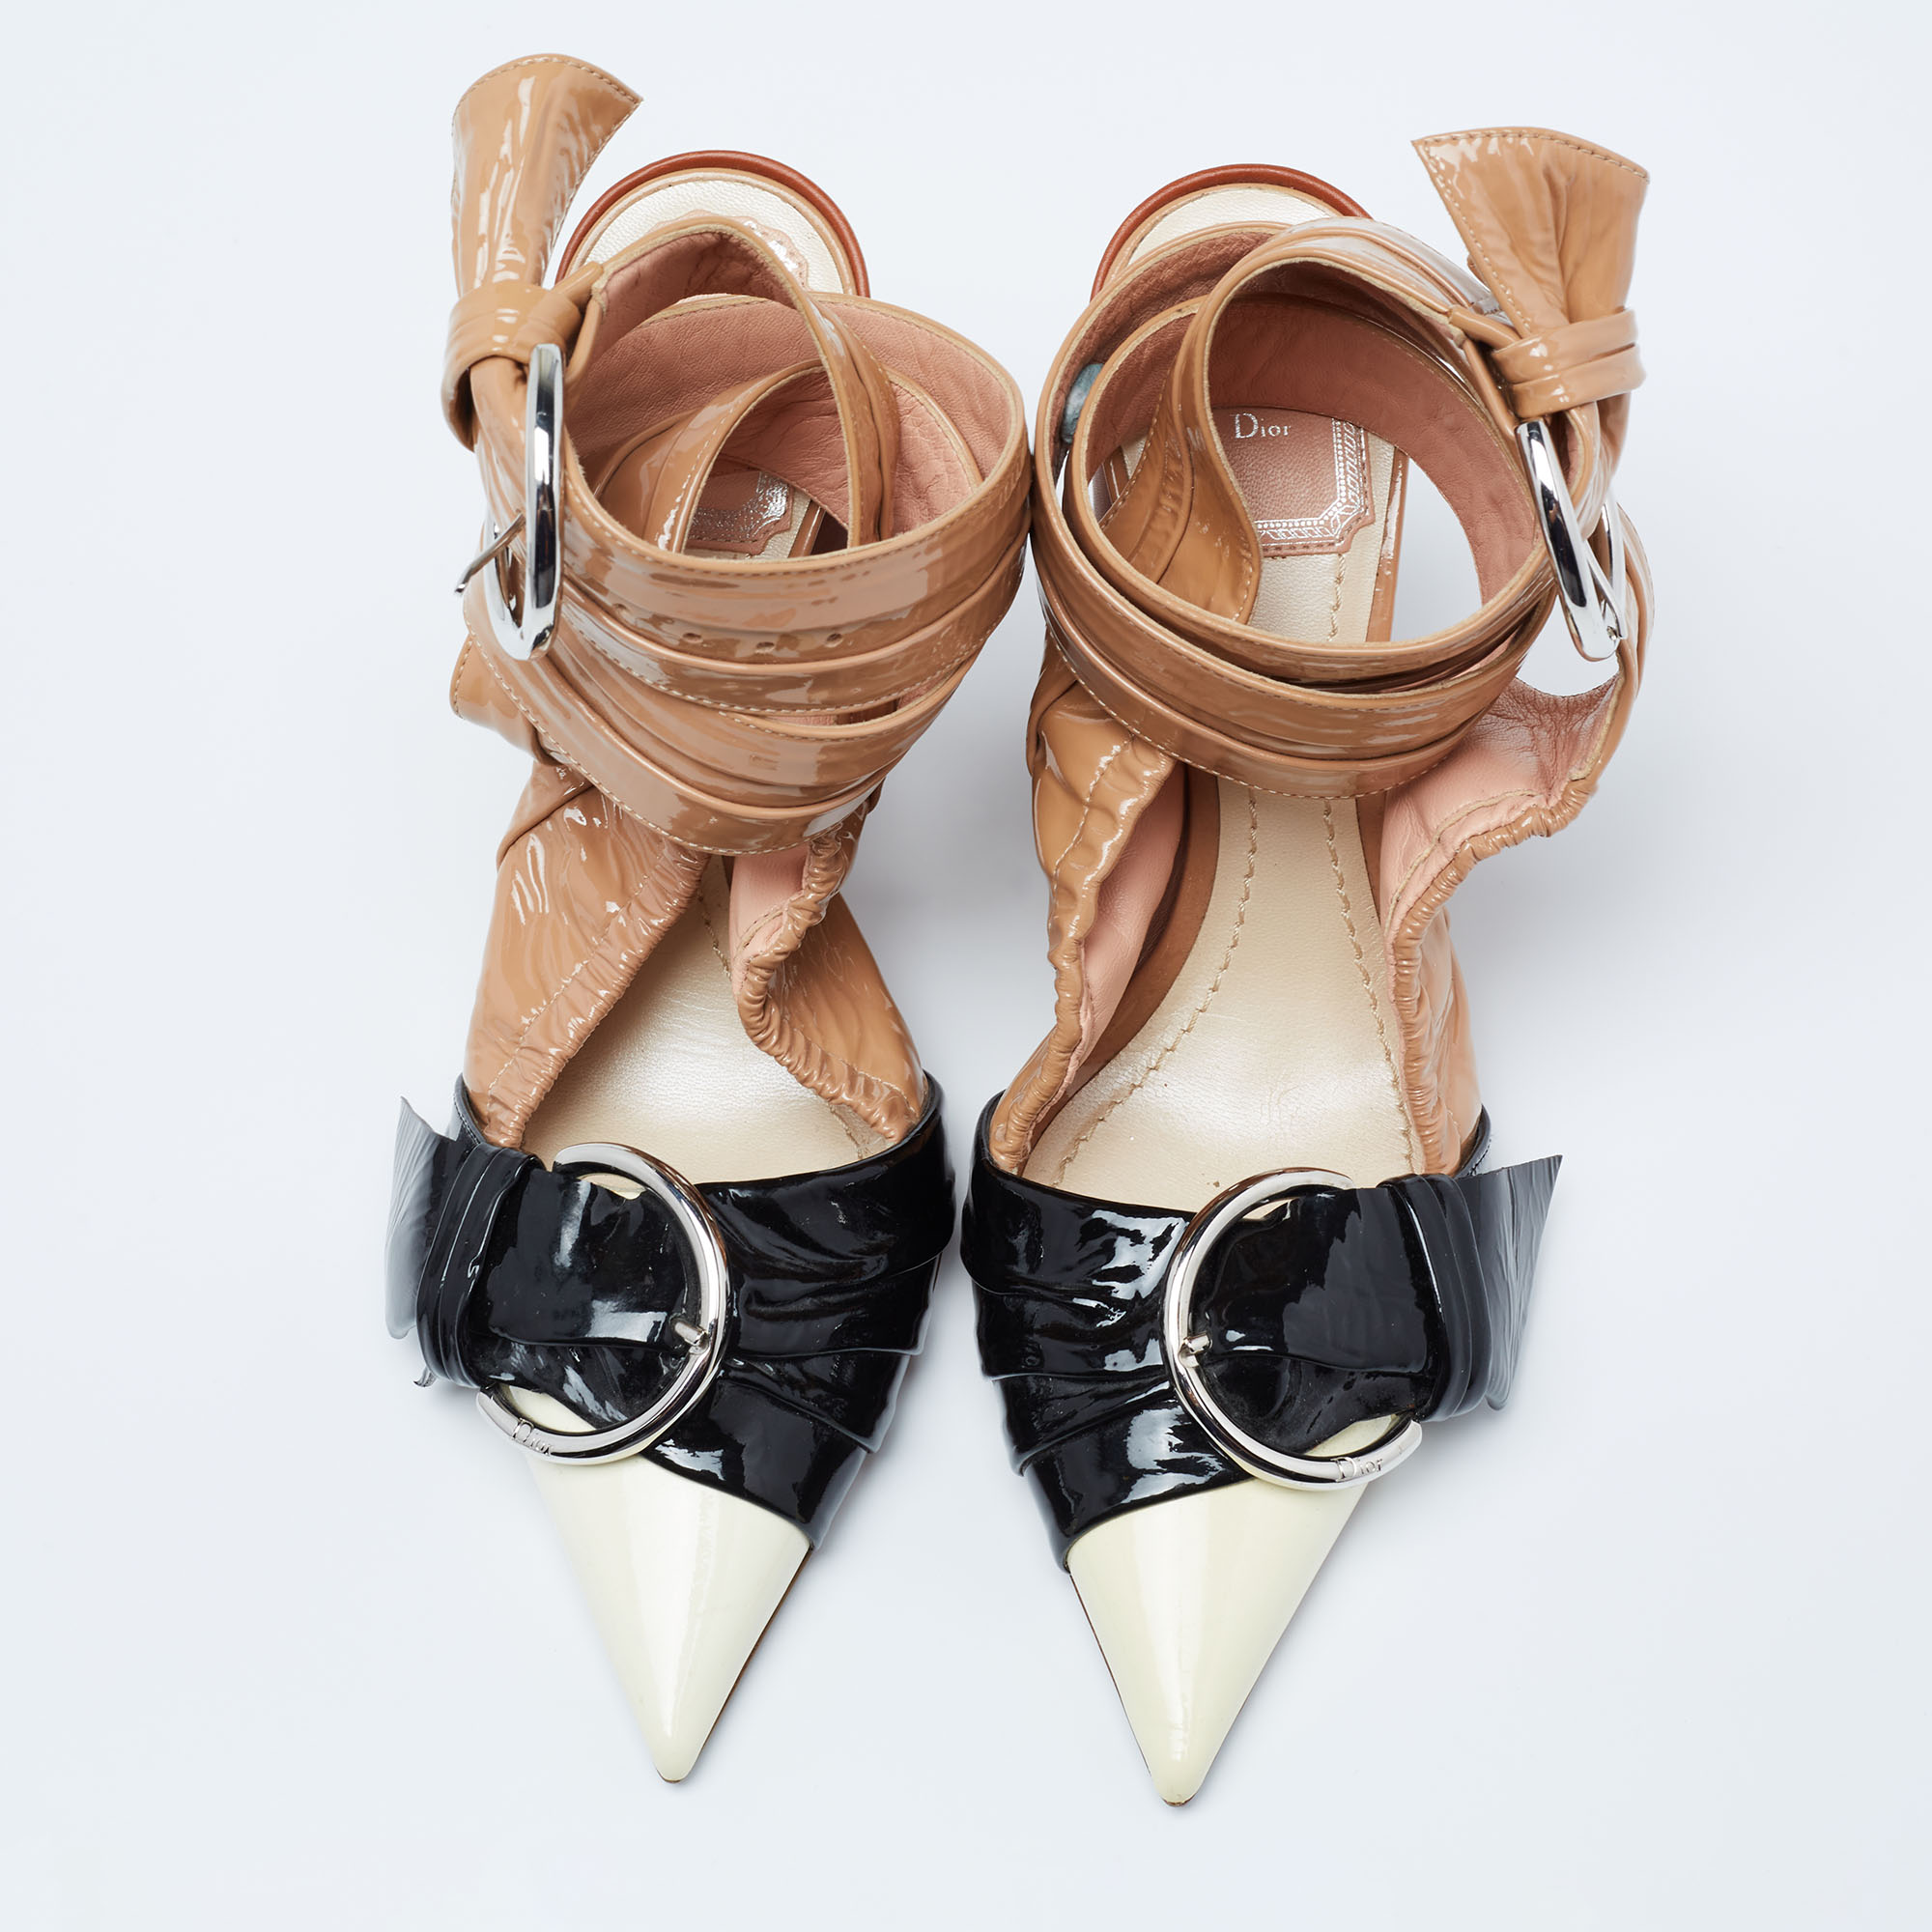 Dior Tri-Color Patent Leather Conquest Buckle Ankle Wrap Pumps Size 36.5